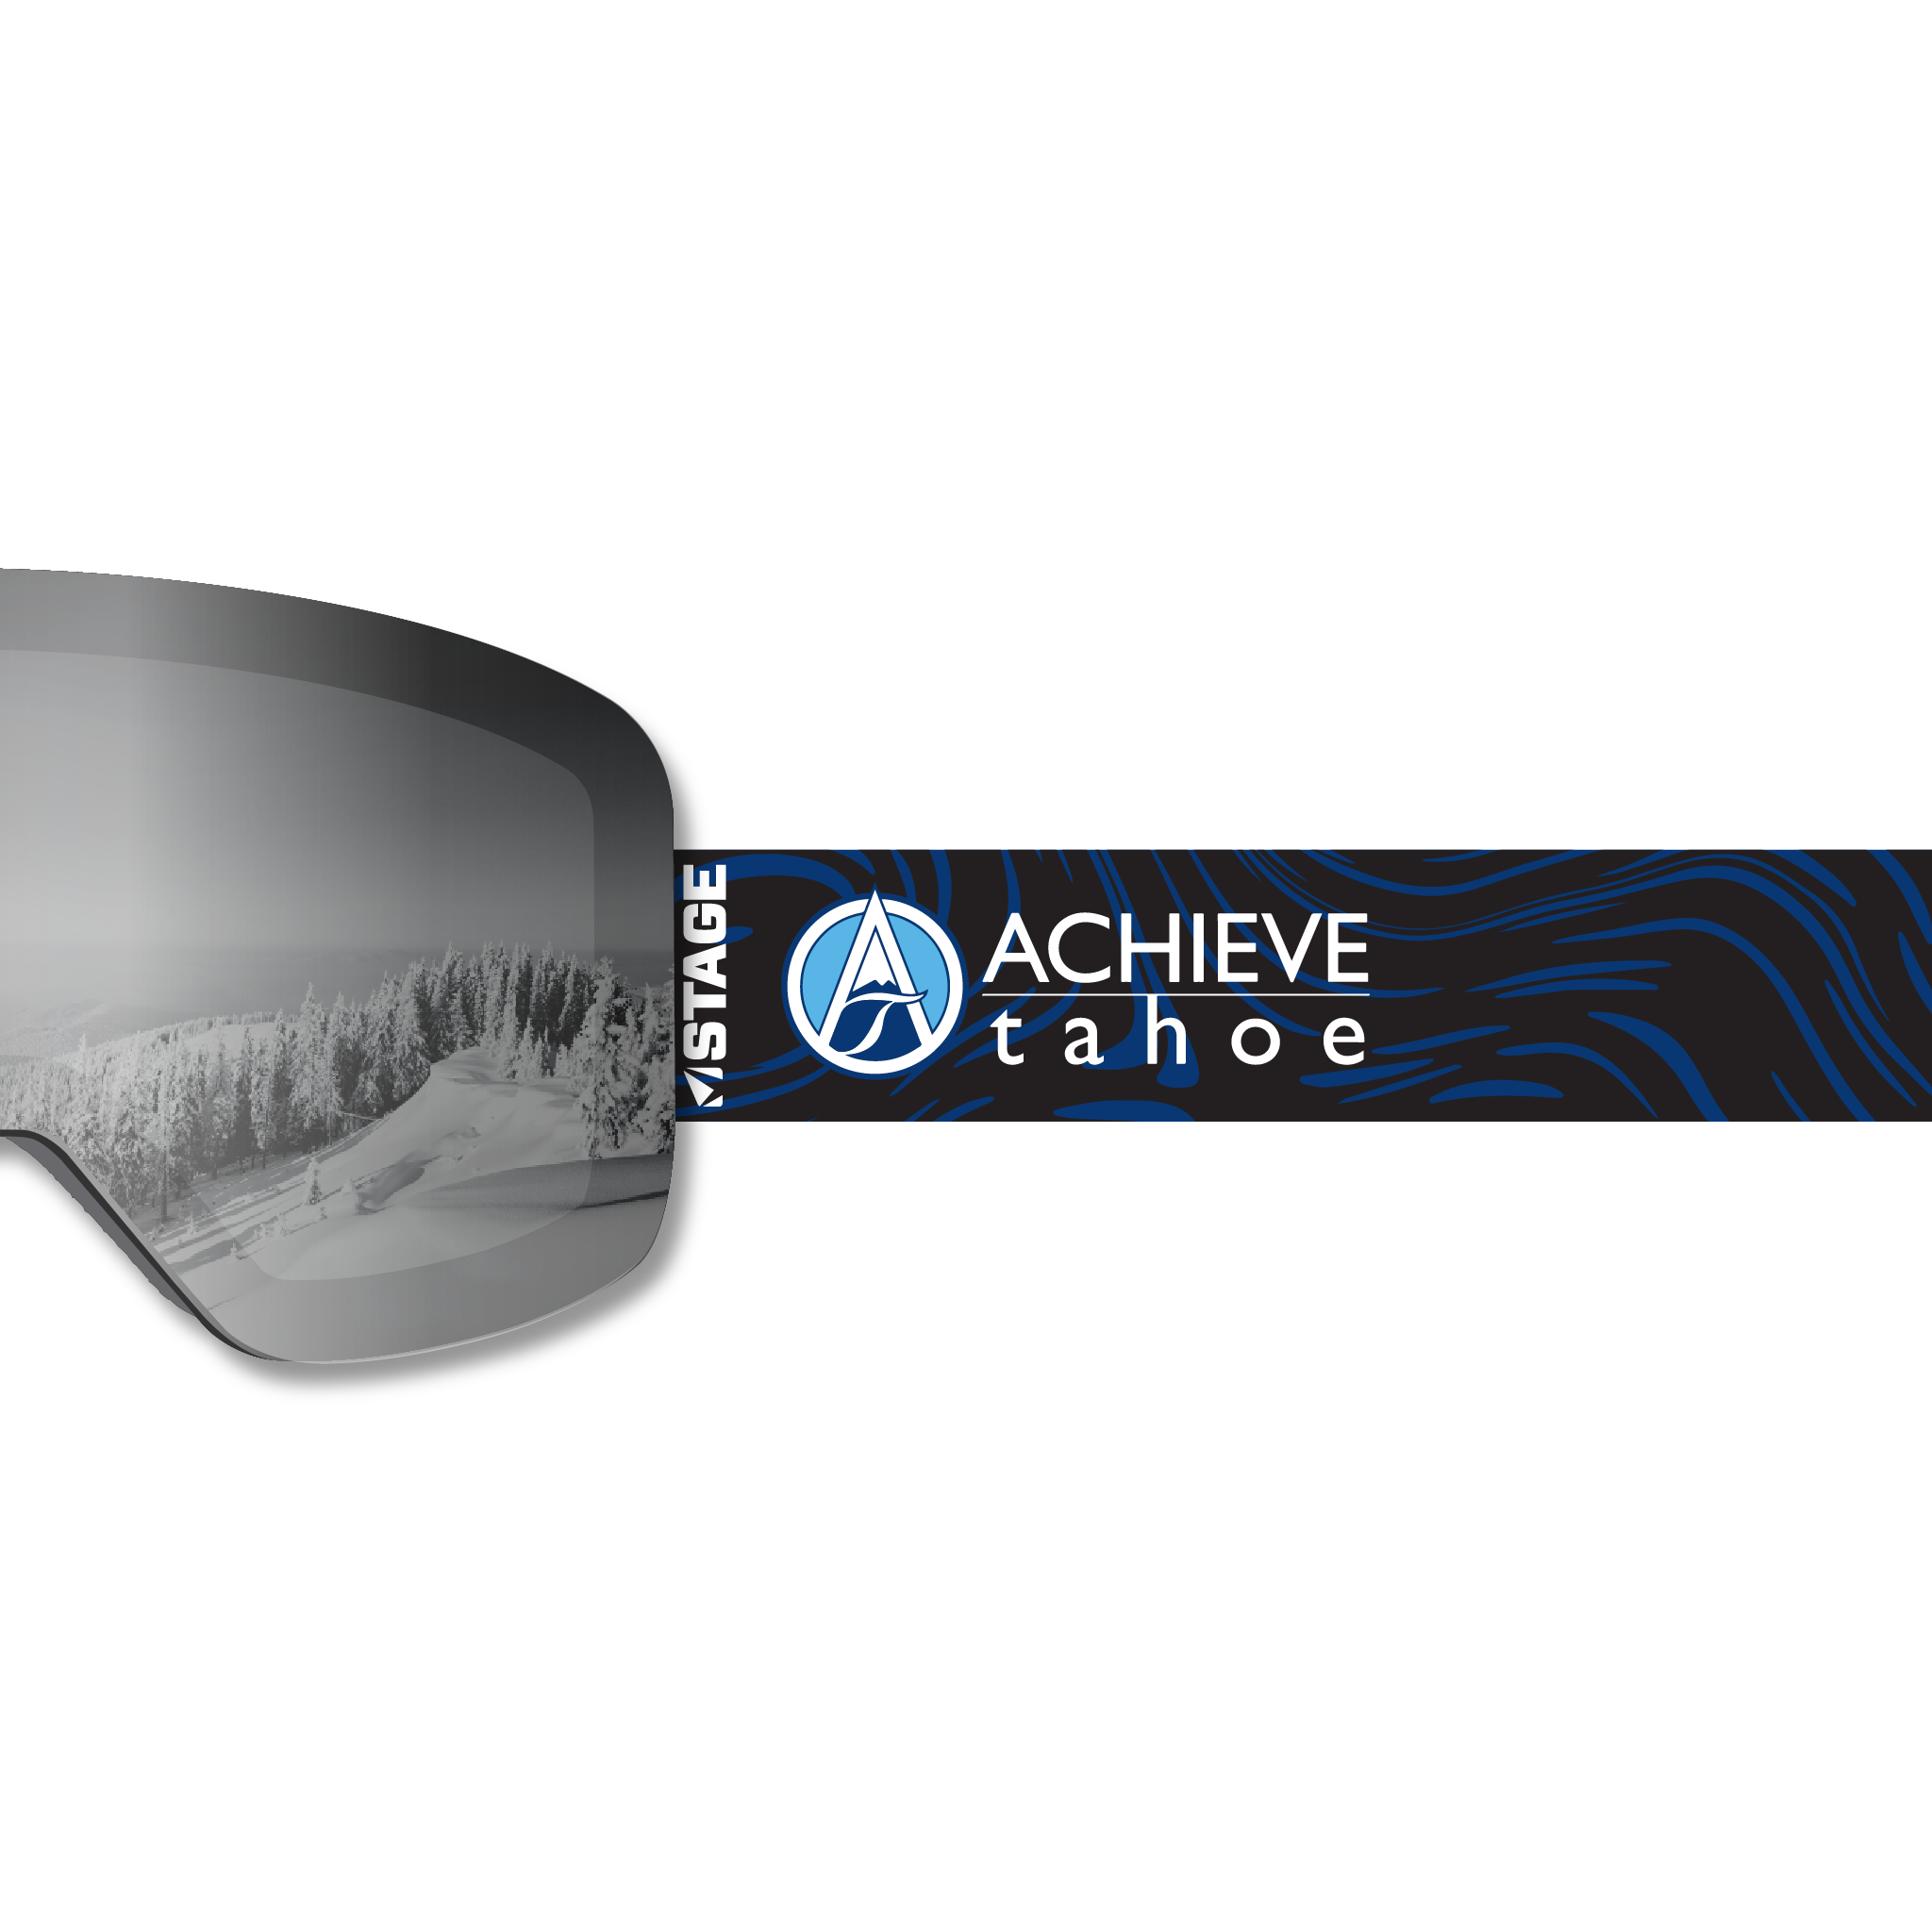 Achieve Tahoe Frameless Prop Ski Goggle - Mirror Chrome Smoke Lens